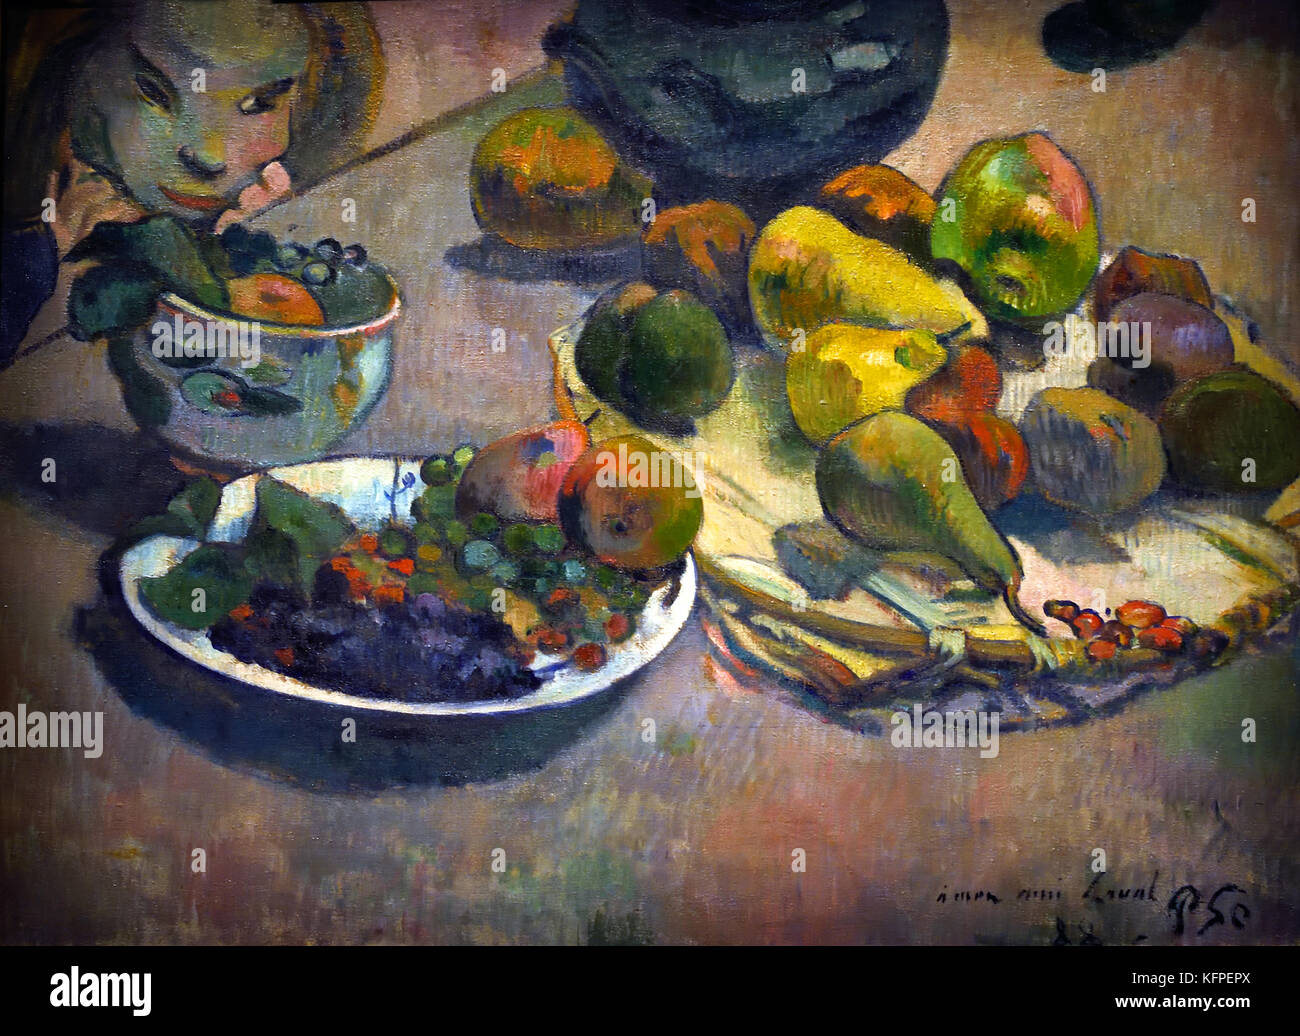 Nature Morte aux frutta - Still Life with Fruit 1888 Paul Gauguin - Eugène Henri Paul Gauguin 1848 - 1903 era un francese post-impressionismo artista, Francia. ( Morto 8 maggio 1903, Atuona, Isole Marchesi, Polinesia Francese ) pittore, scultore. Foto Stock